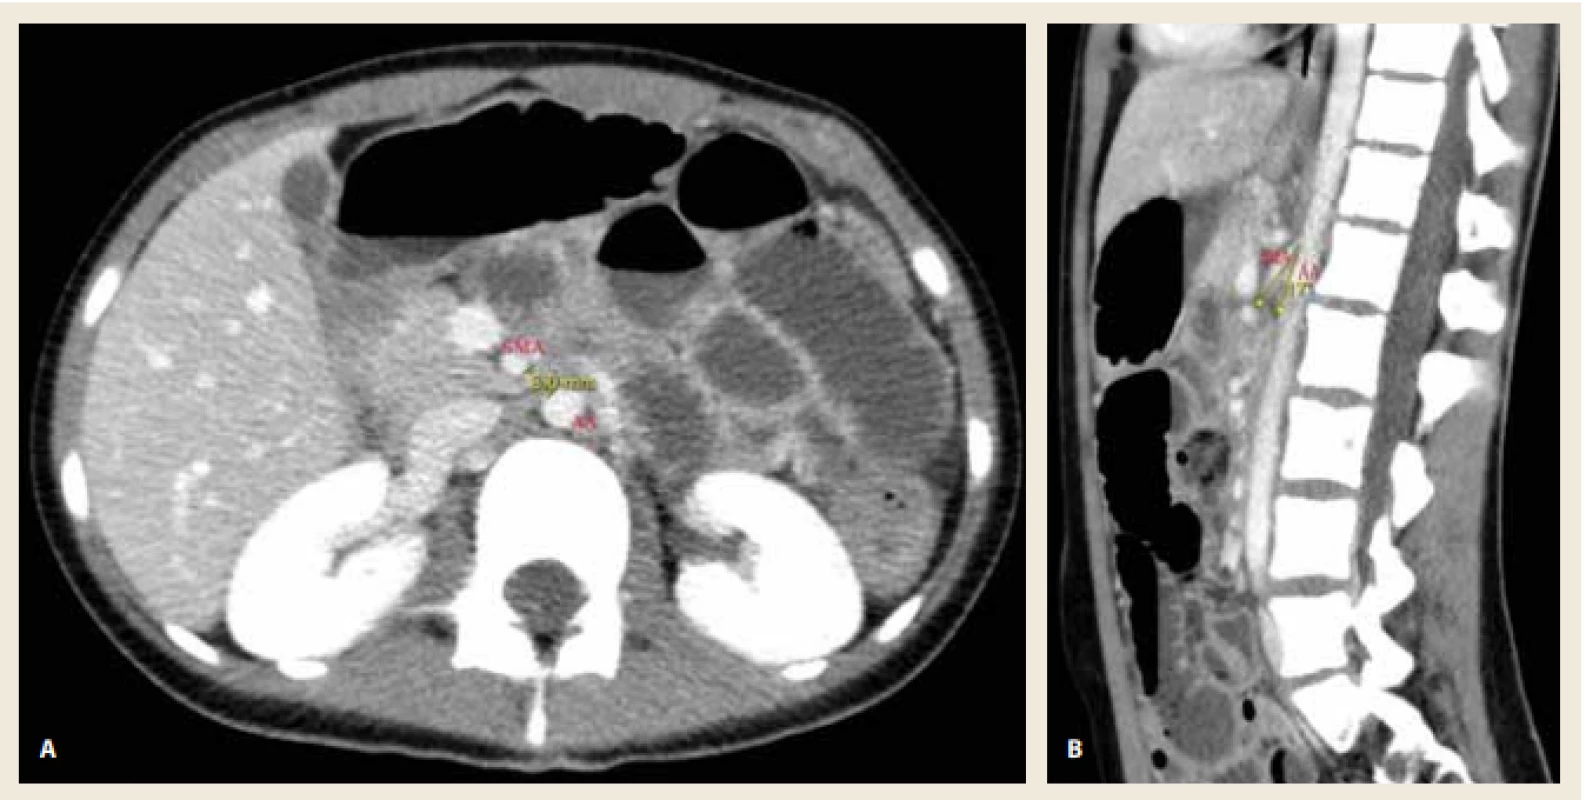 A. Kontrastní CT břicha (transverzální rovina) s patrným snížením aortomezenterické vzdálenosti na 8 mm.<br>
Obr. 2B. Kontrastní CT břicha (sagitální rovina) s patrným snížením aortomezenterického úhlu na 17°. <br>
Fig. 2A. Contrast-enhanced CT scan of abdomen (axial view) shows the reduction of aortomesenteric distance to 8 mm.
Fig. 2B. Contrast-enhanced CT scan of abdomen (sagittal view) shows the reduction of aortomesenteric angle to 17°. 